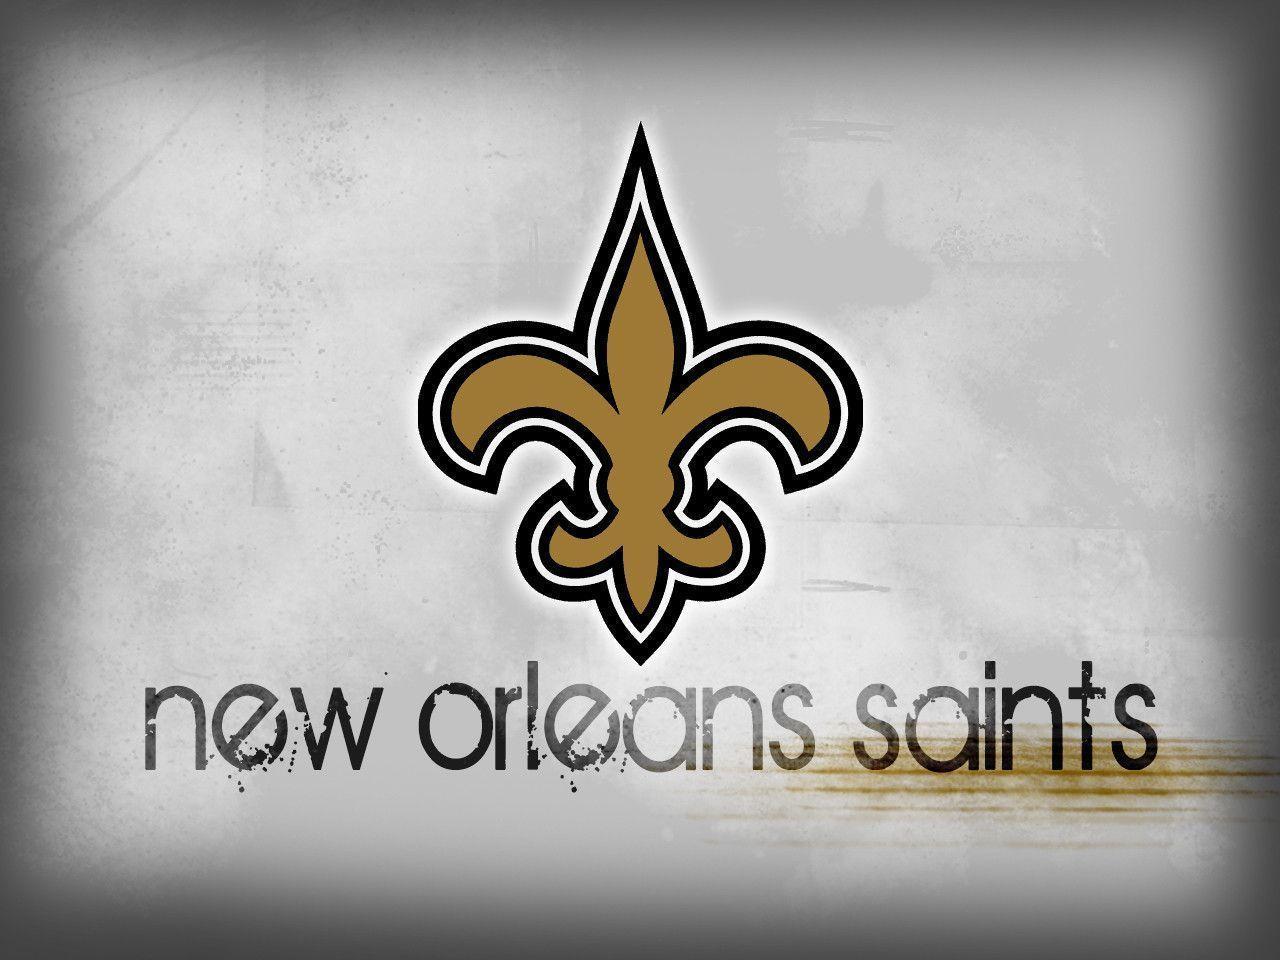 New Orleans Saints Wallpaper 64211 Best HD Wallpaper. Wallpaiper